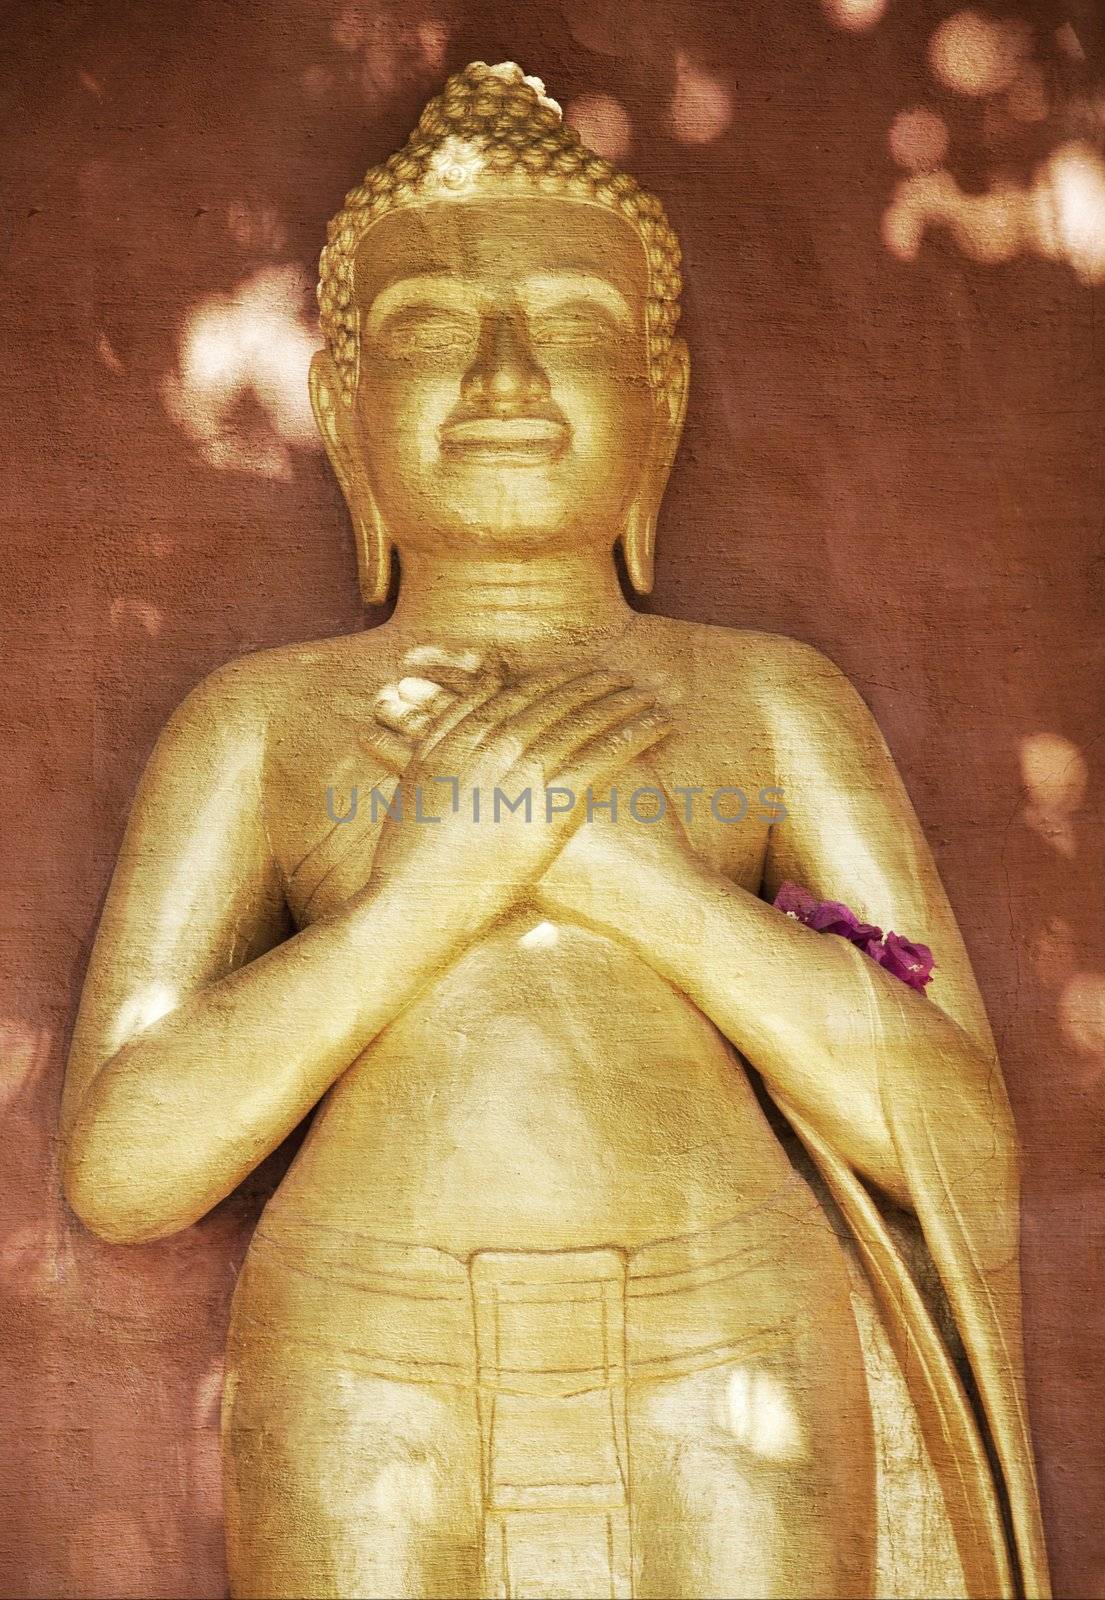 Buddha statue in Cambodia